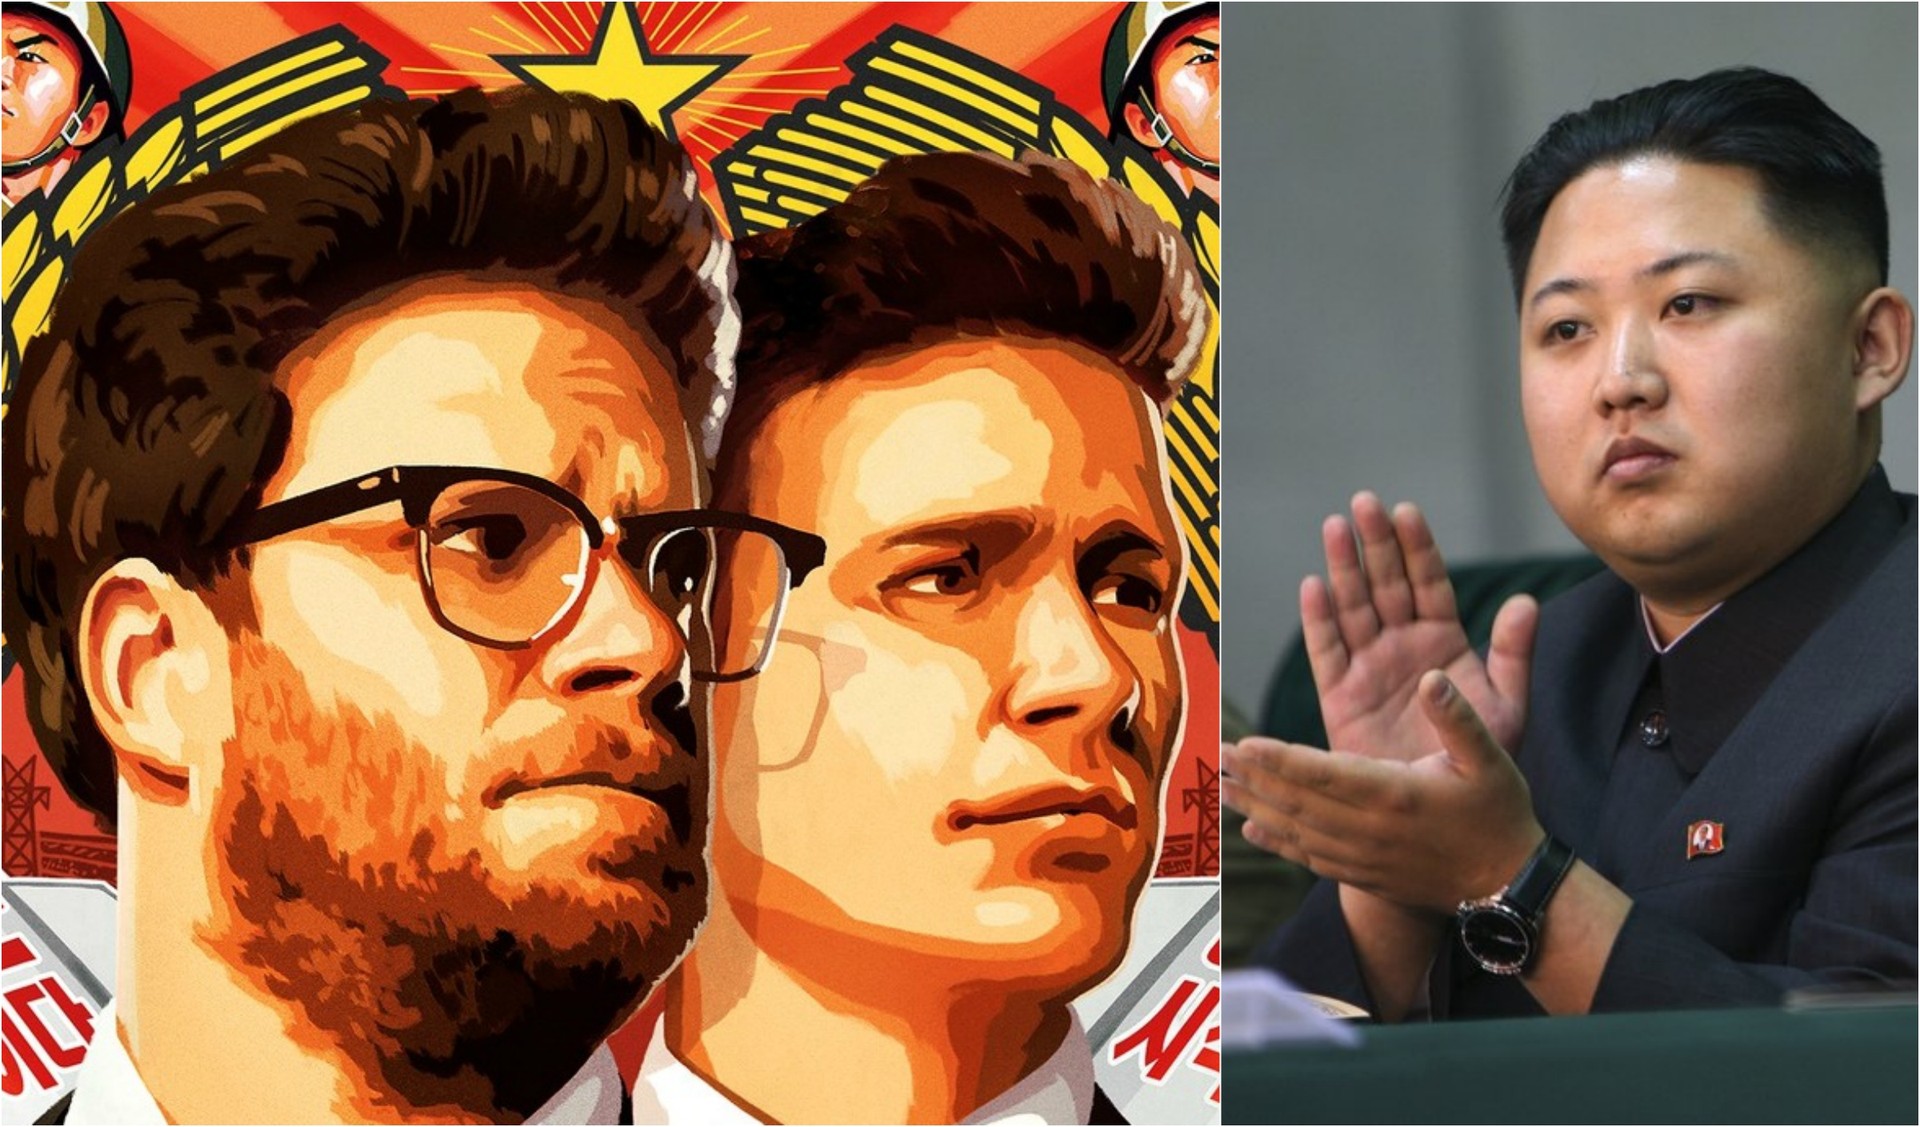 Seth Rogen (à esq.) e James Franco em detalhe do pôster de 'The Interview', e o líder norte-coreano, Kim Jong-un. (Foto: Divulgação e Petersnoopy/Creative Commons)